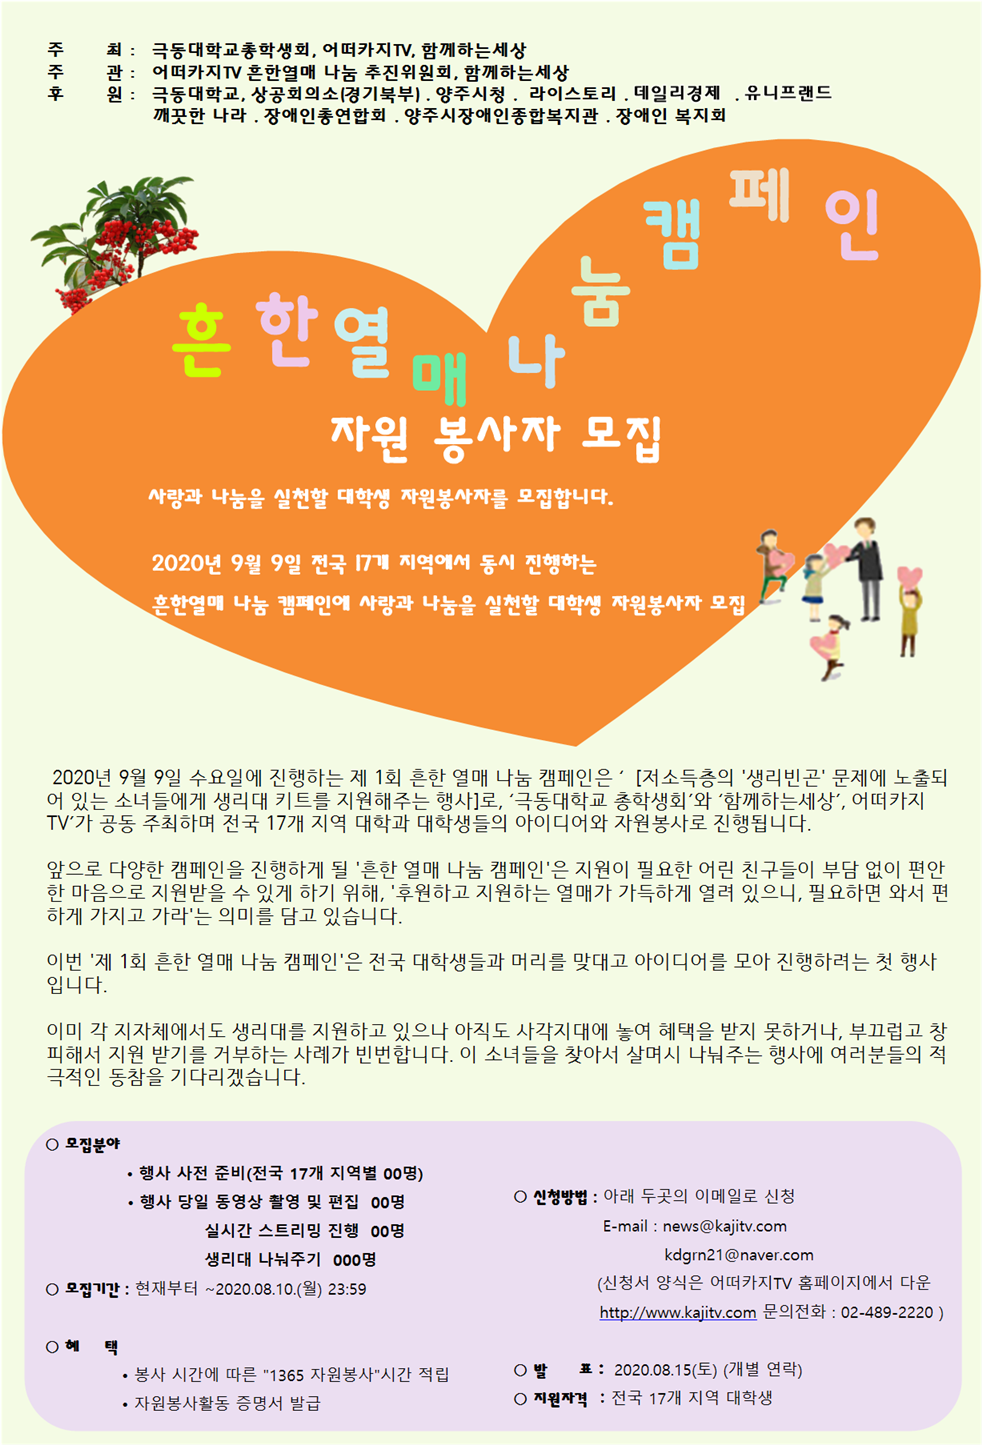 흔한열매 나눔 캠페인 자원봉사 모집 포스터.png